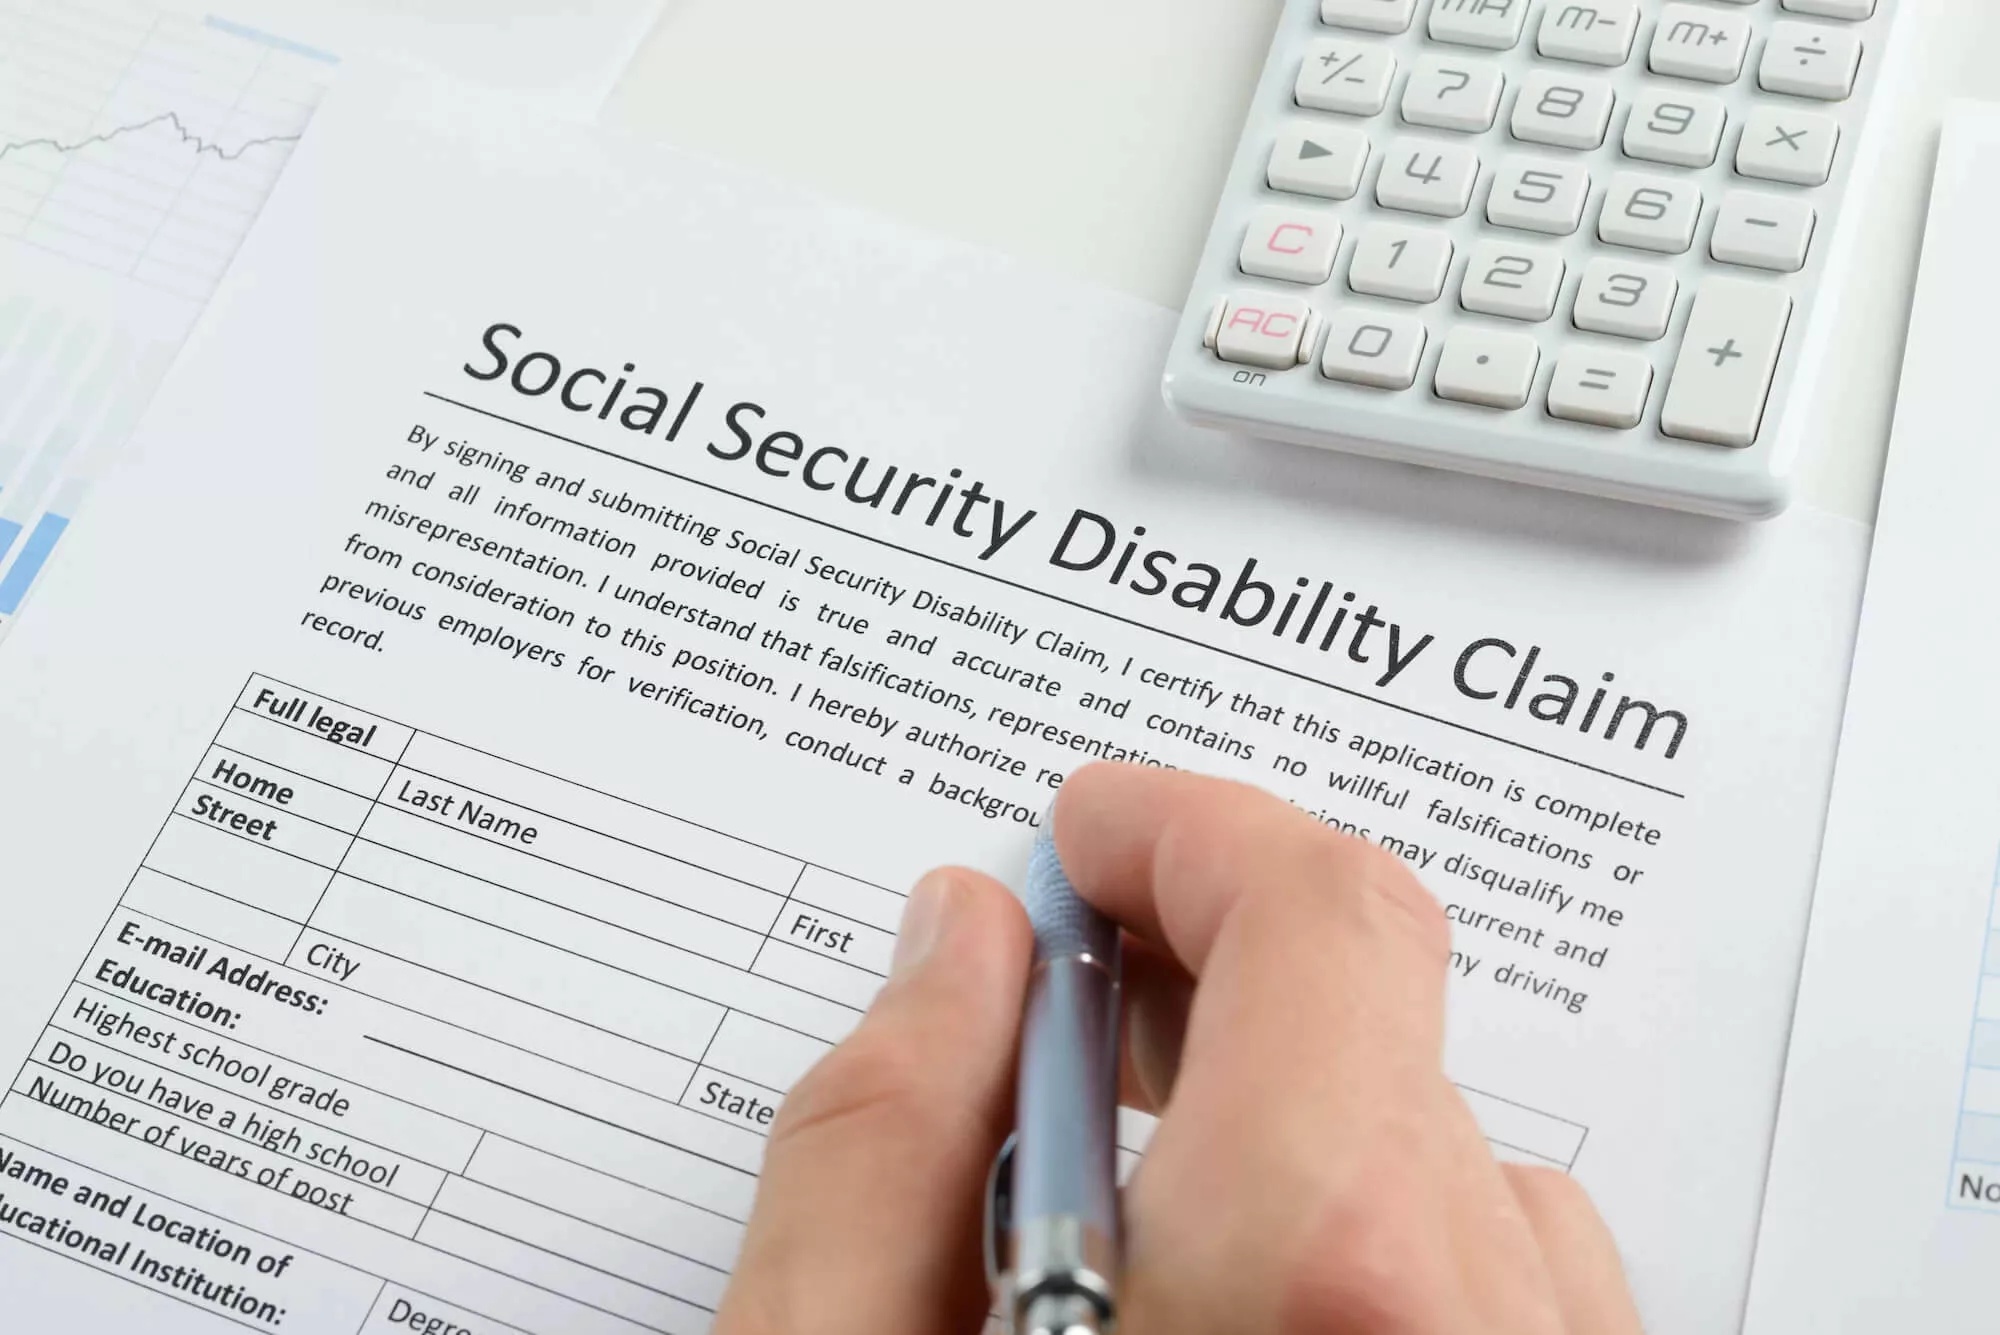 Social Security Disability Claim form.